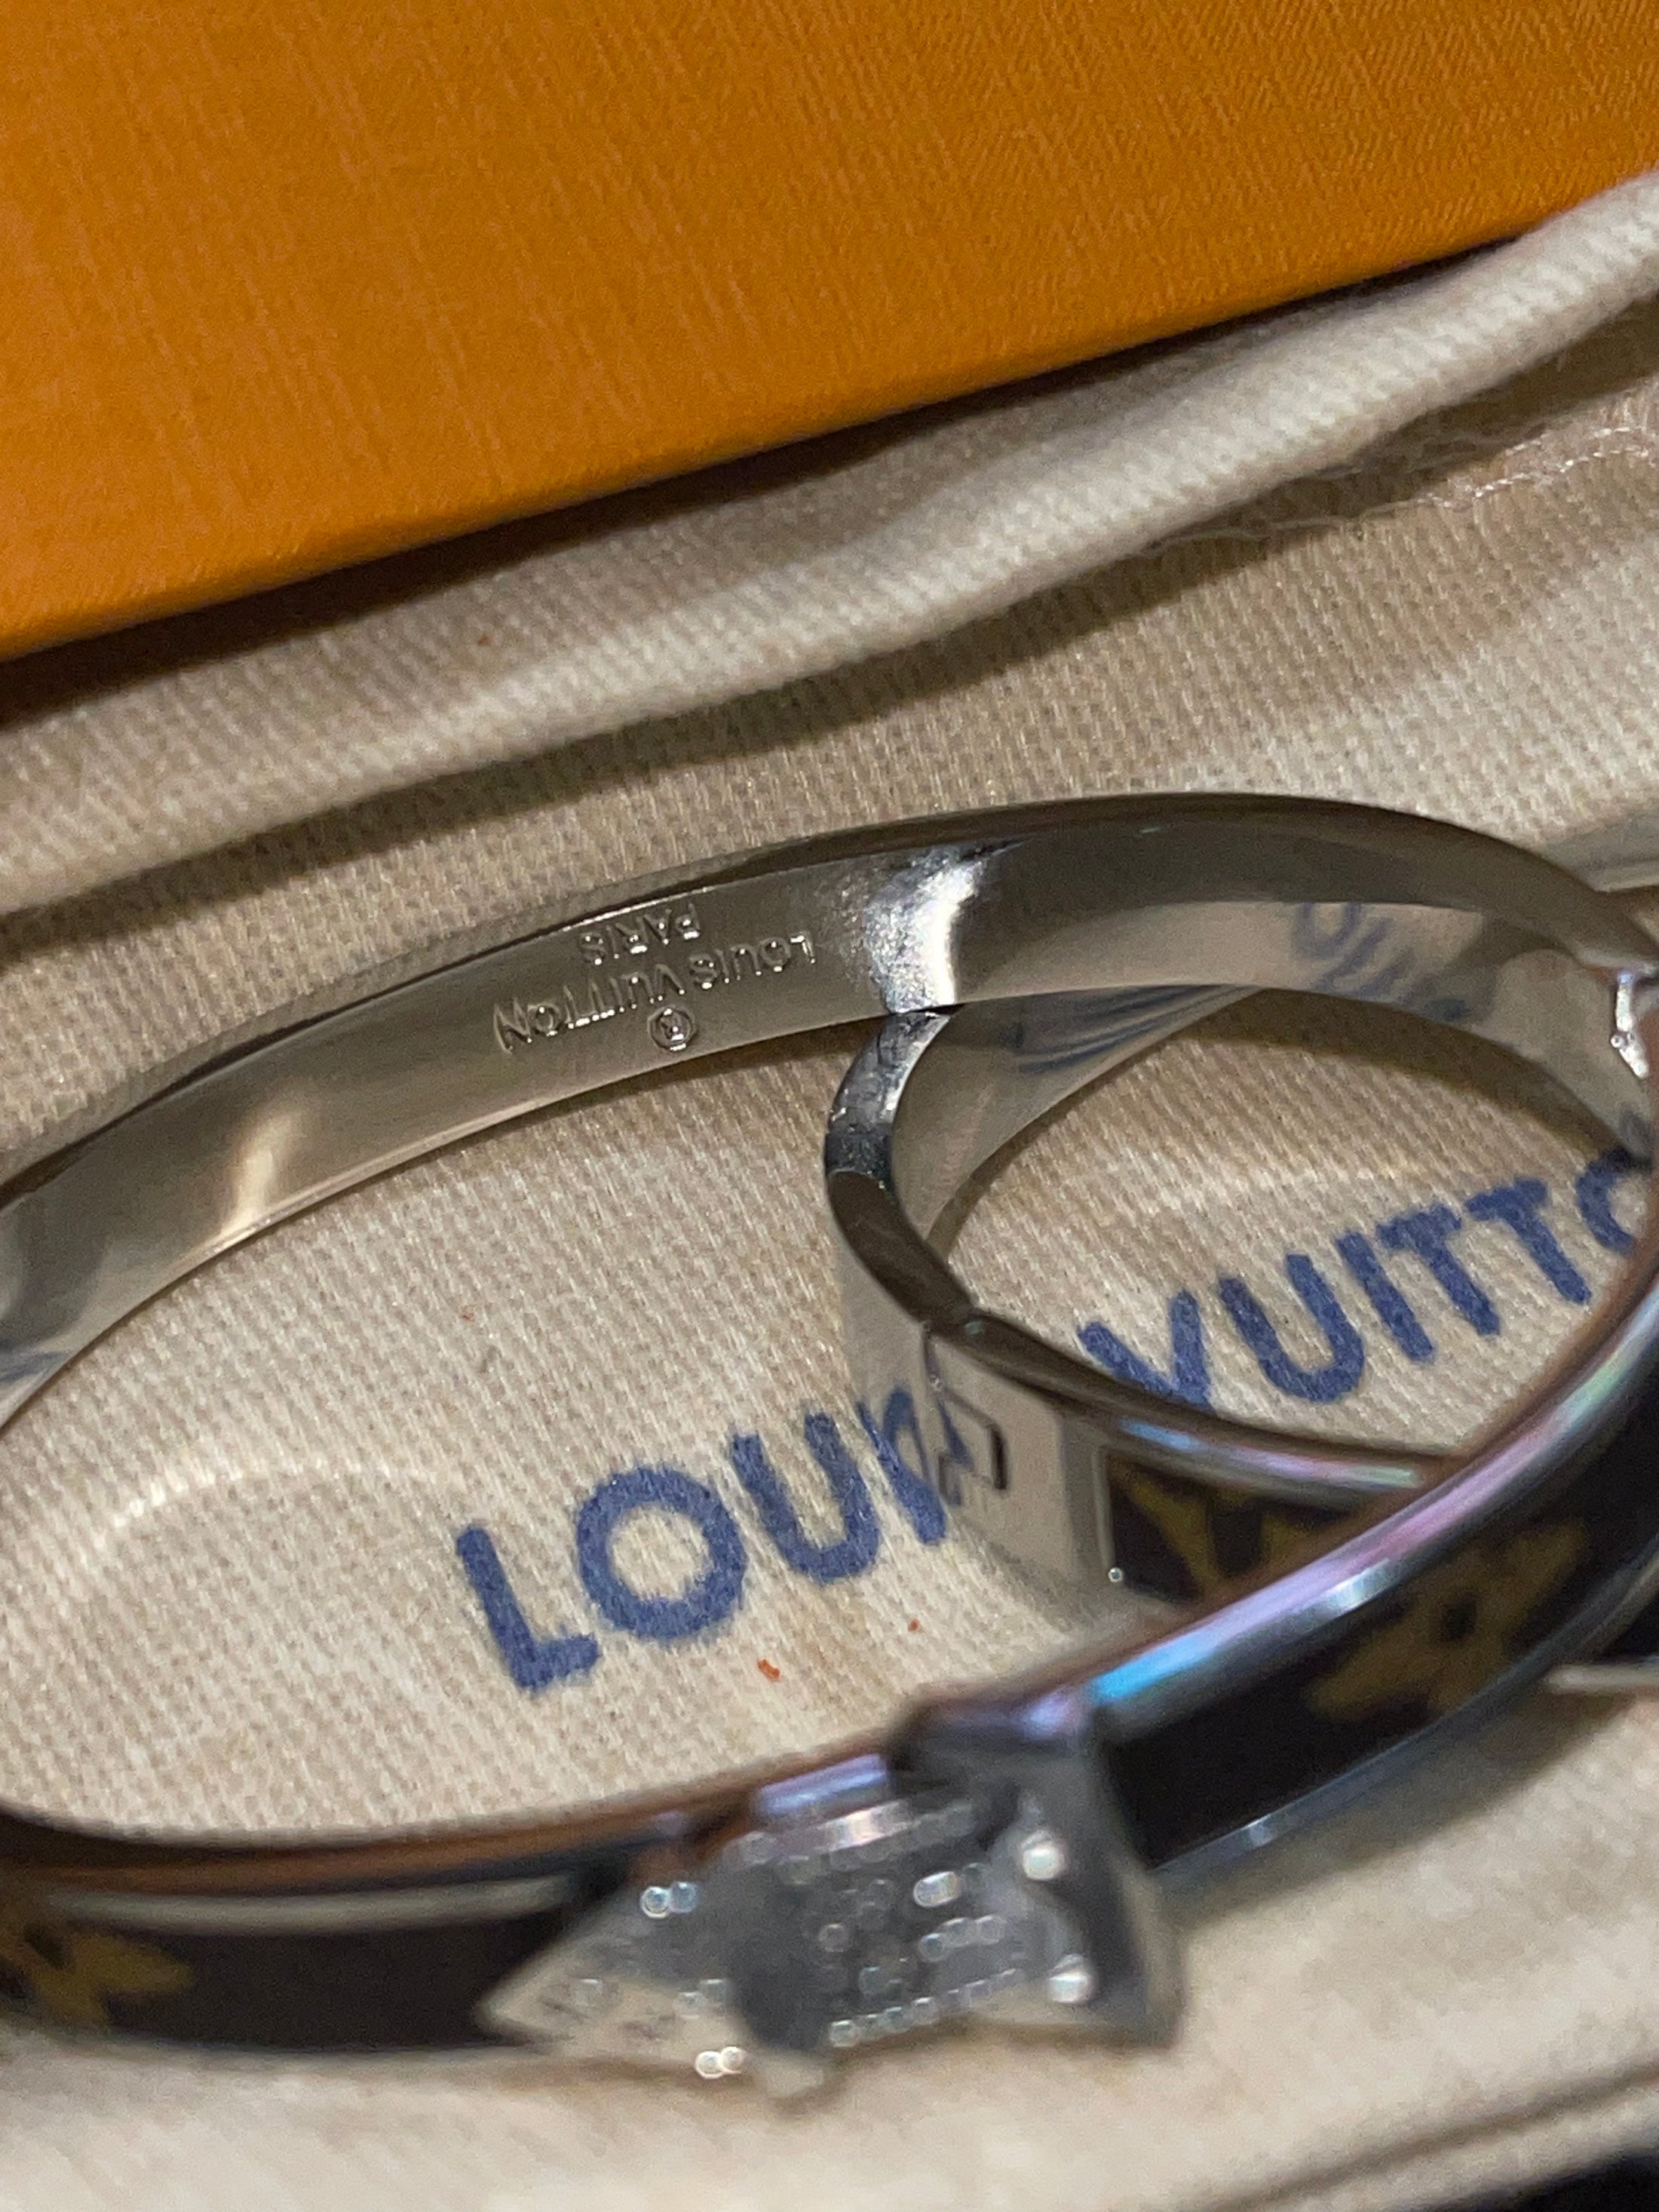 Luxury Unisex Bangle – Ideal Christmas Gift, Size 7 LV Friendship Bracelet, infinity bracelet, buckle bangle